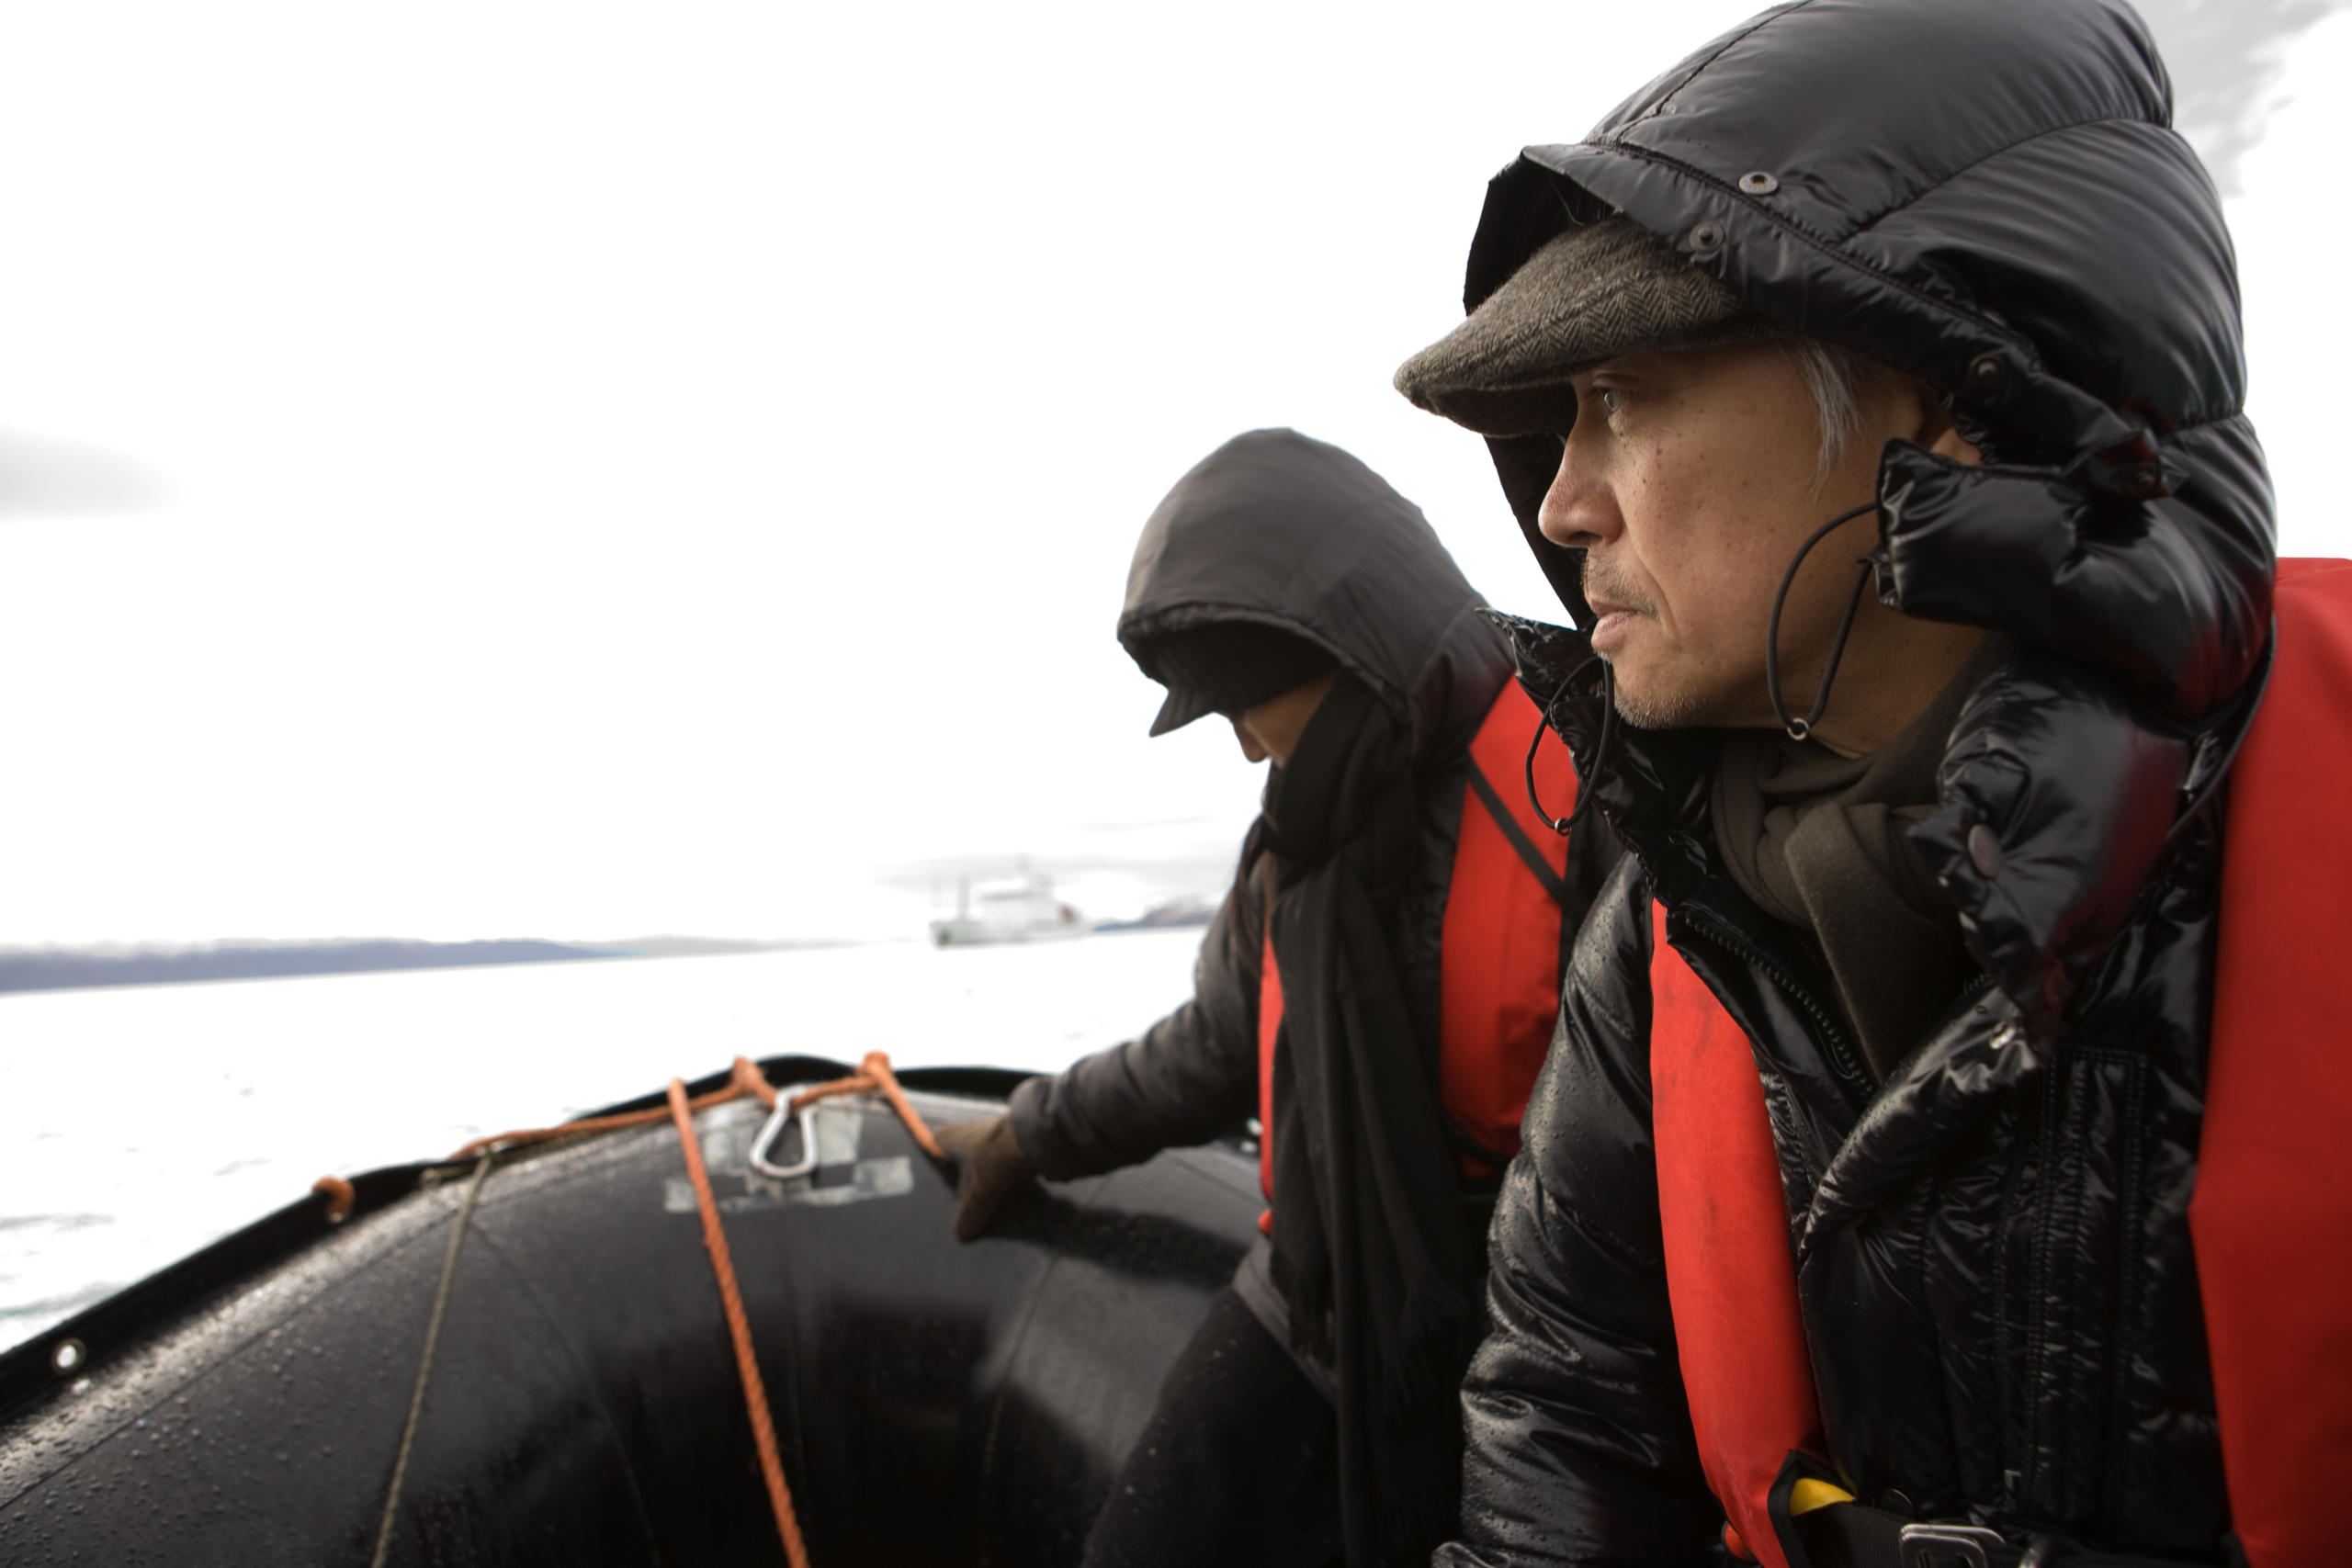 figures in Arctic gear onboard a zodiak